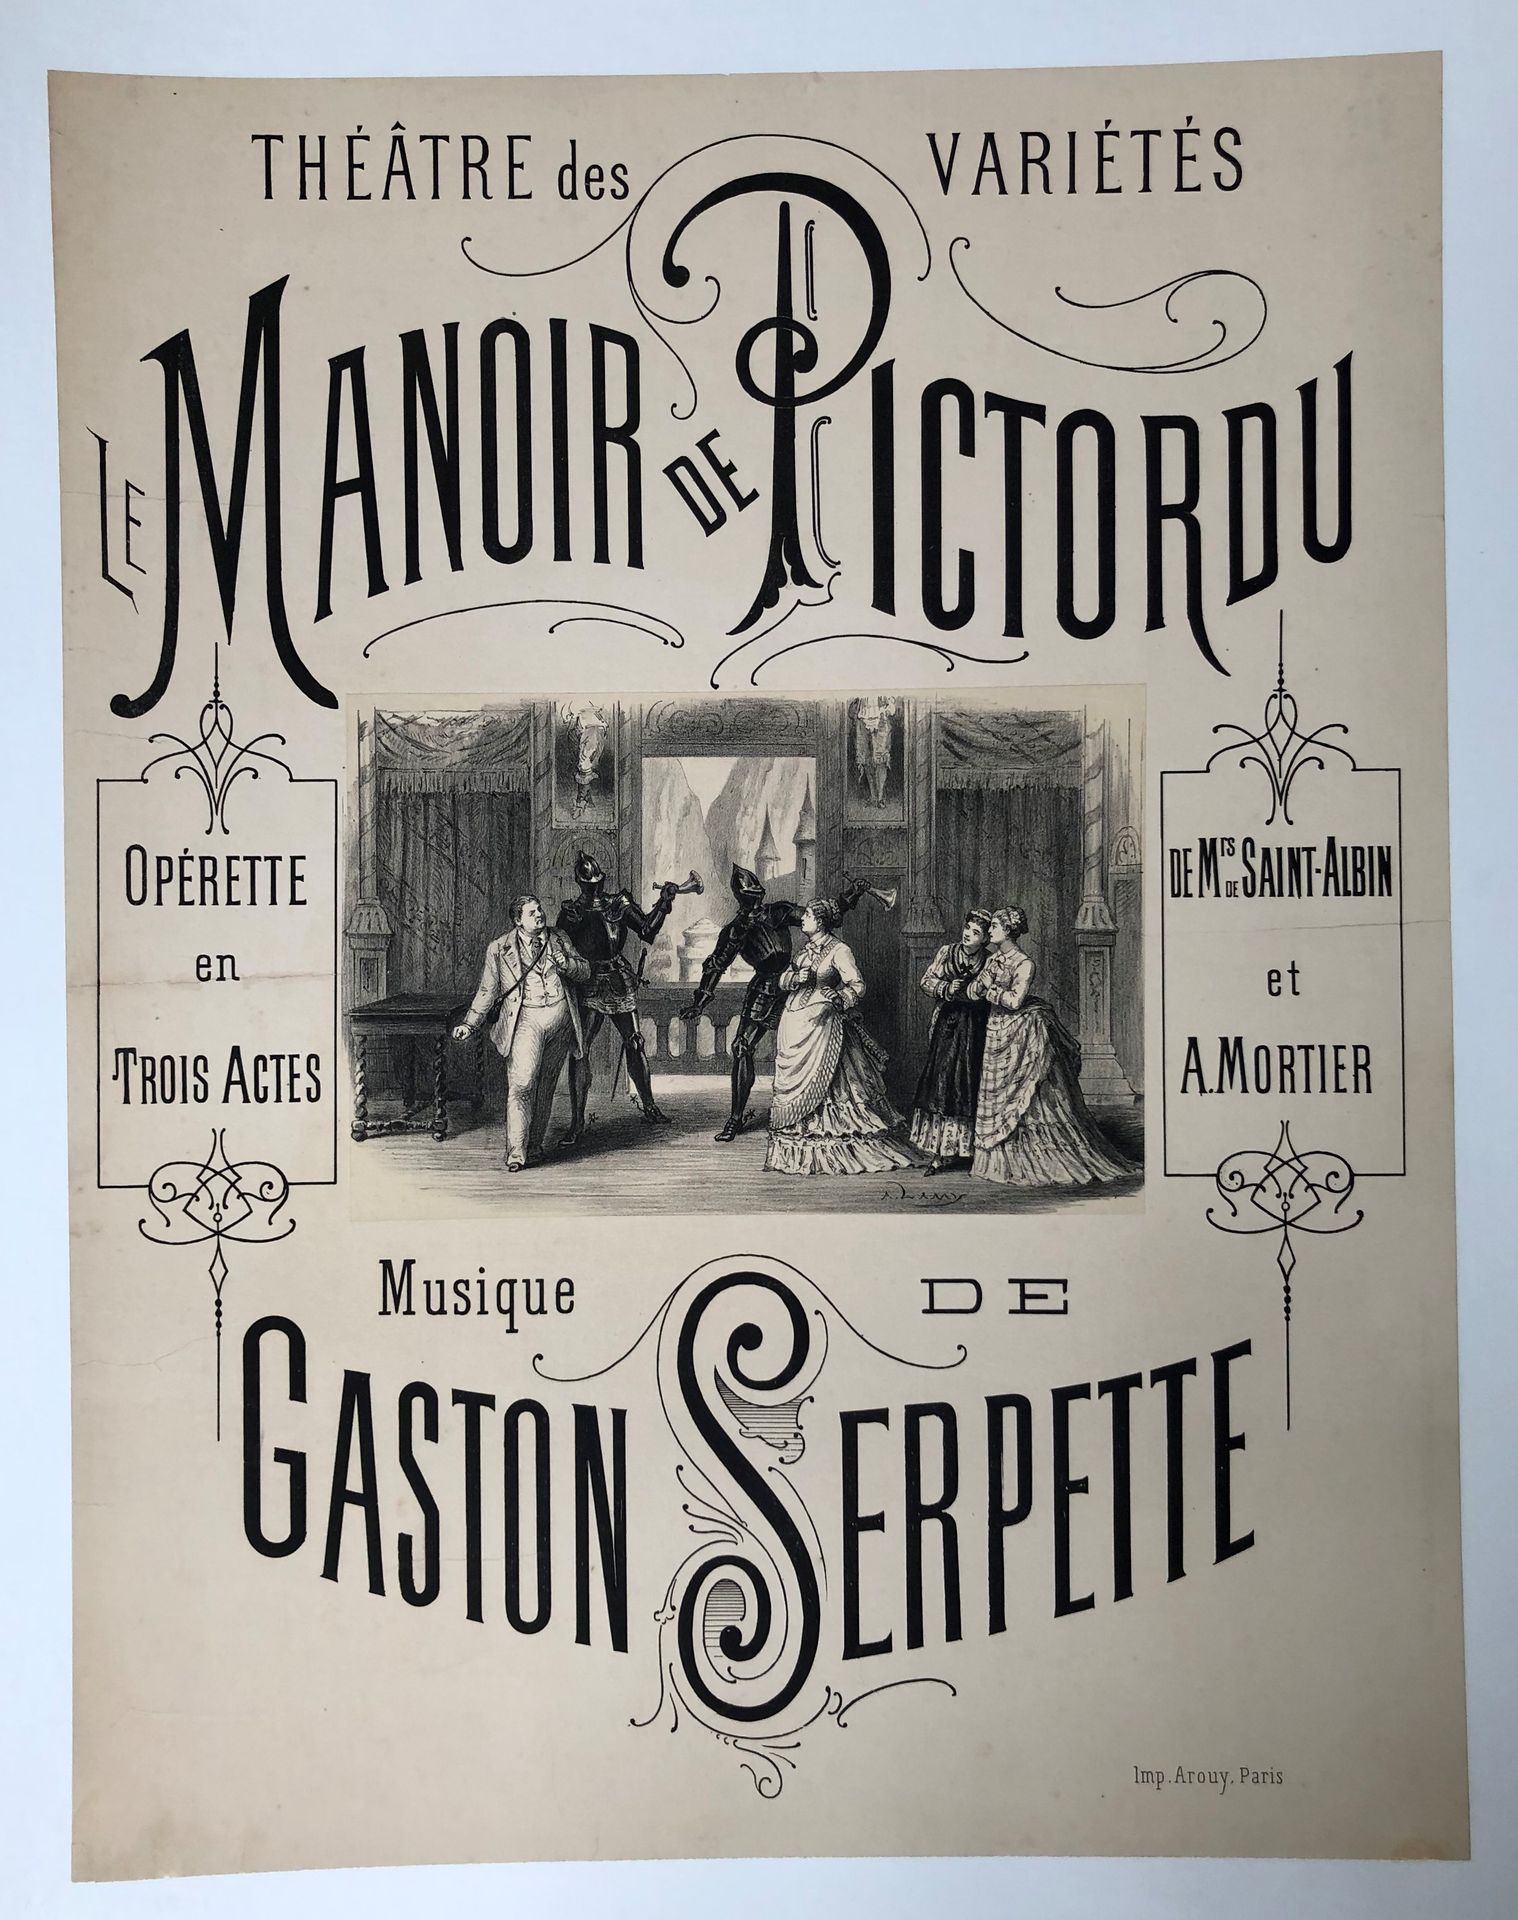 Null Lote de 21 carteles:
-Gaston SERPETTE (1846-1904). La mansión de Pictordu 
&hellip;